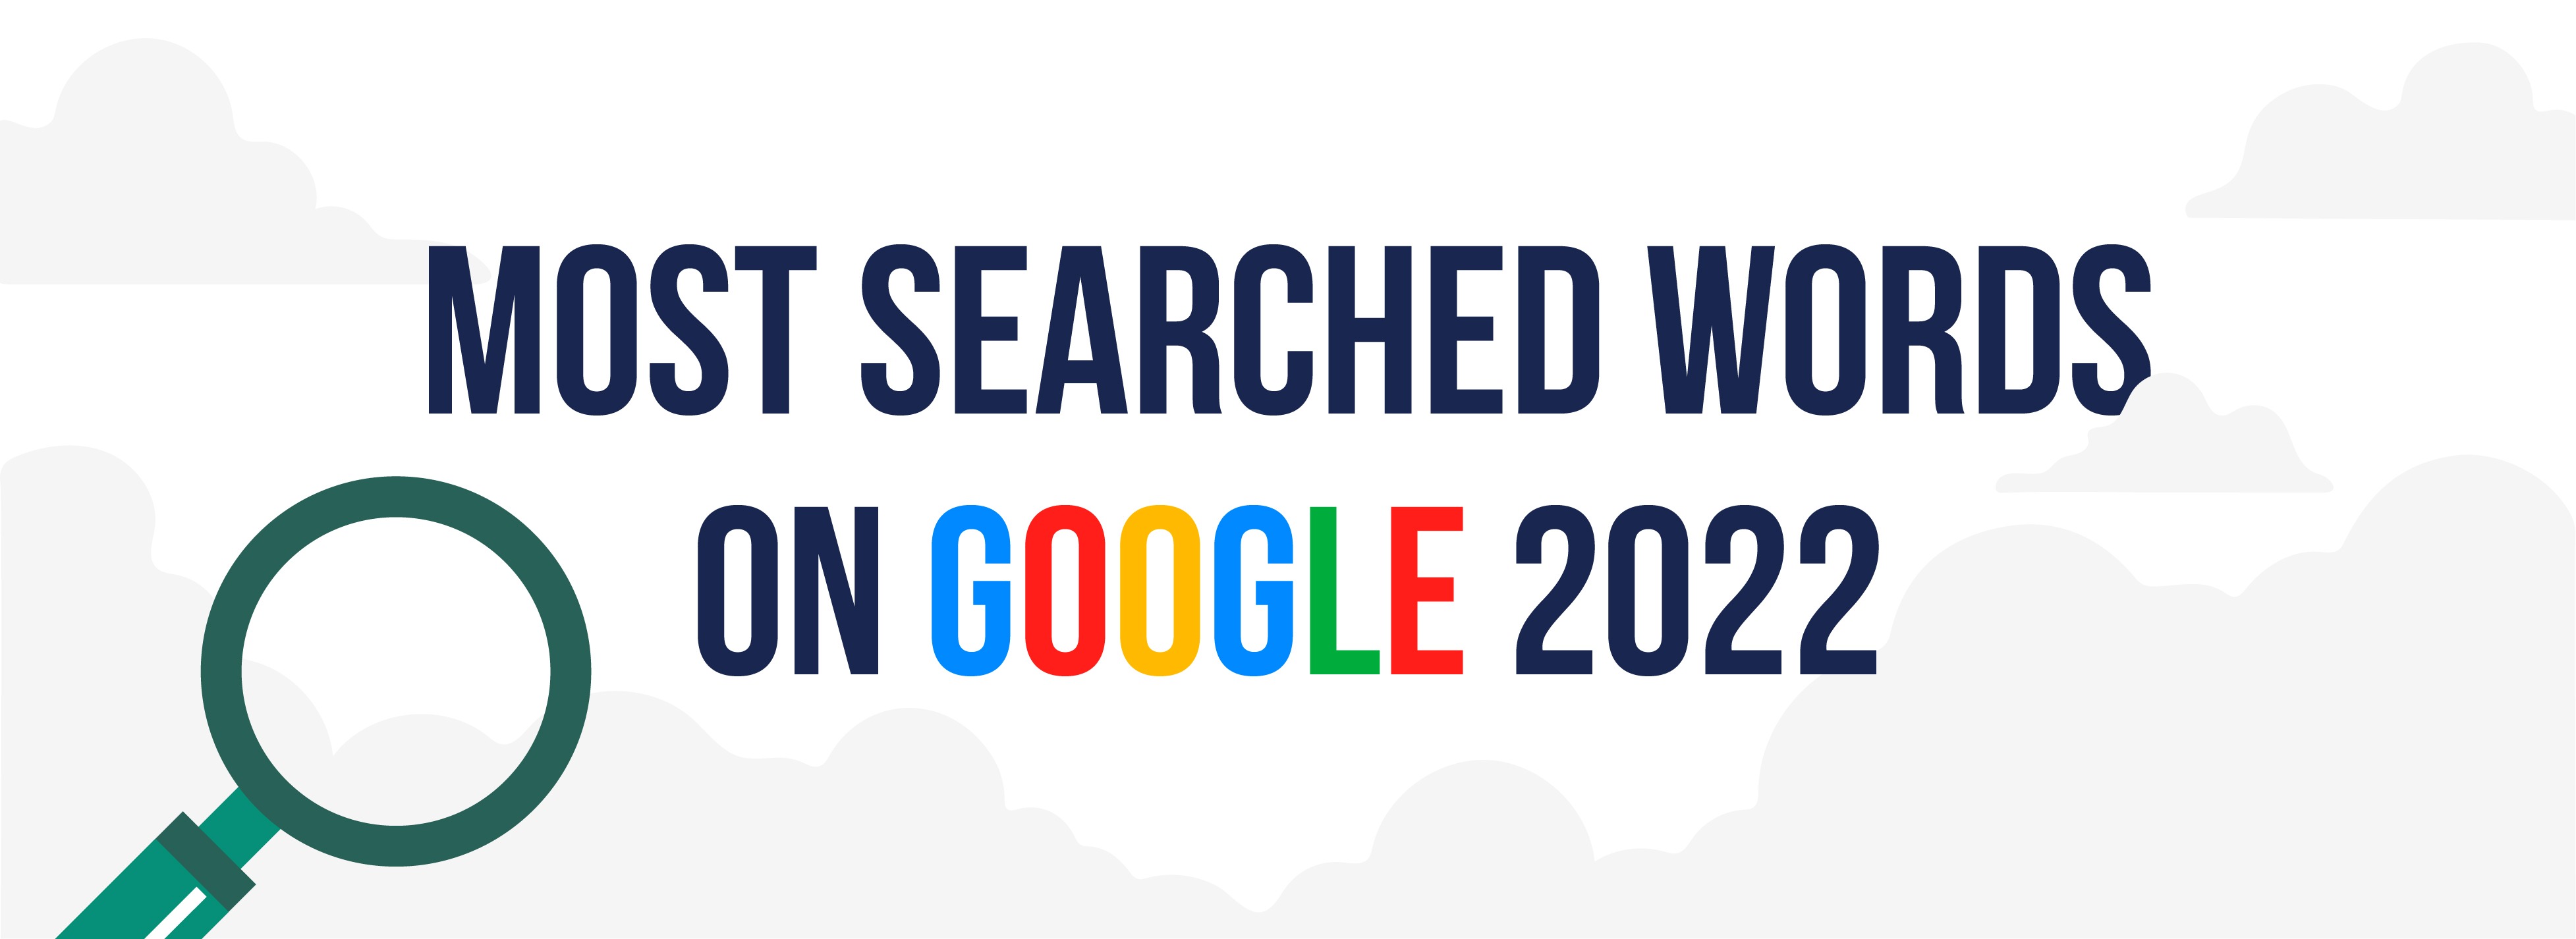 گزارش سالانه گوگل پر جستجو ترین های 2022 جهان و ایران